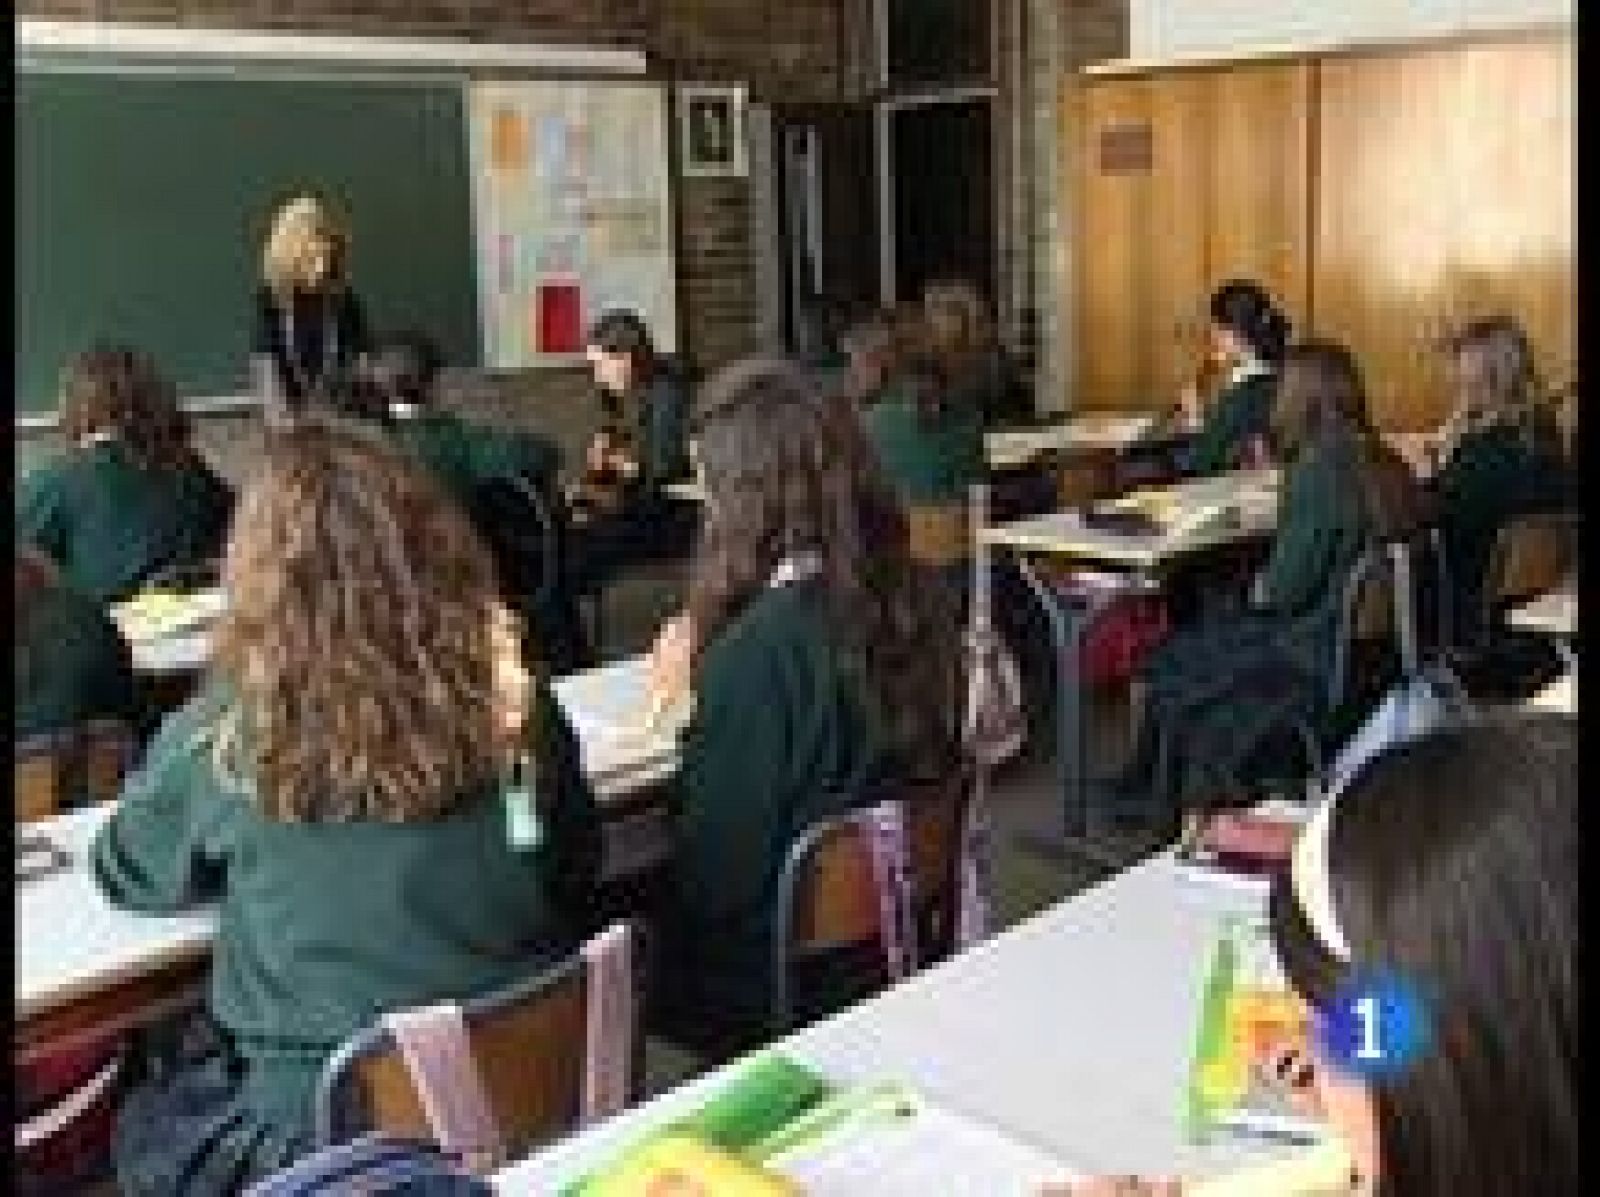 Alrededor de 150 colegios en España separan a los chicos de las chicas en las aulas bajo la premisa de ofrecer una educación diferenciada, en unos tiempos en los que son mayoría los colegios mixtos. 